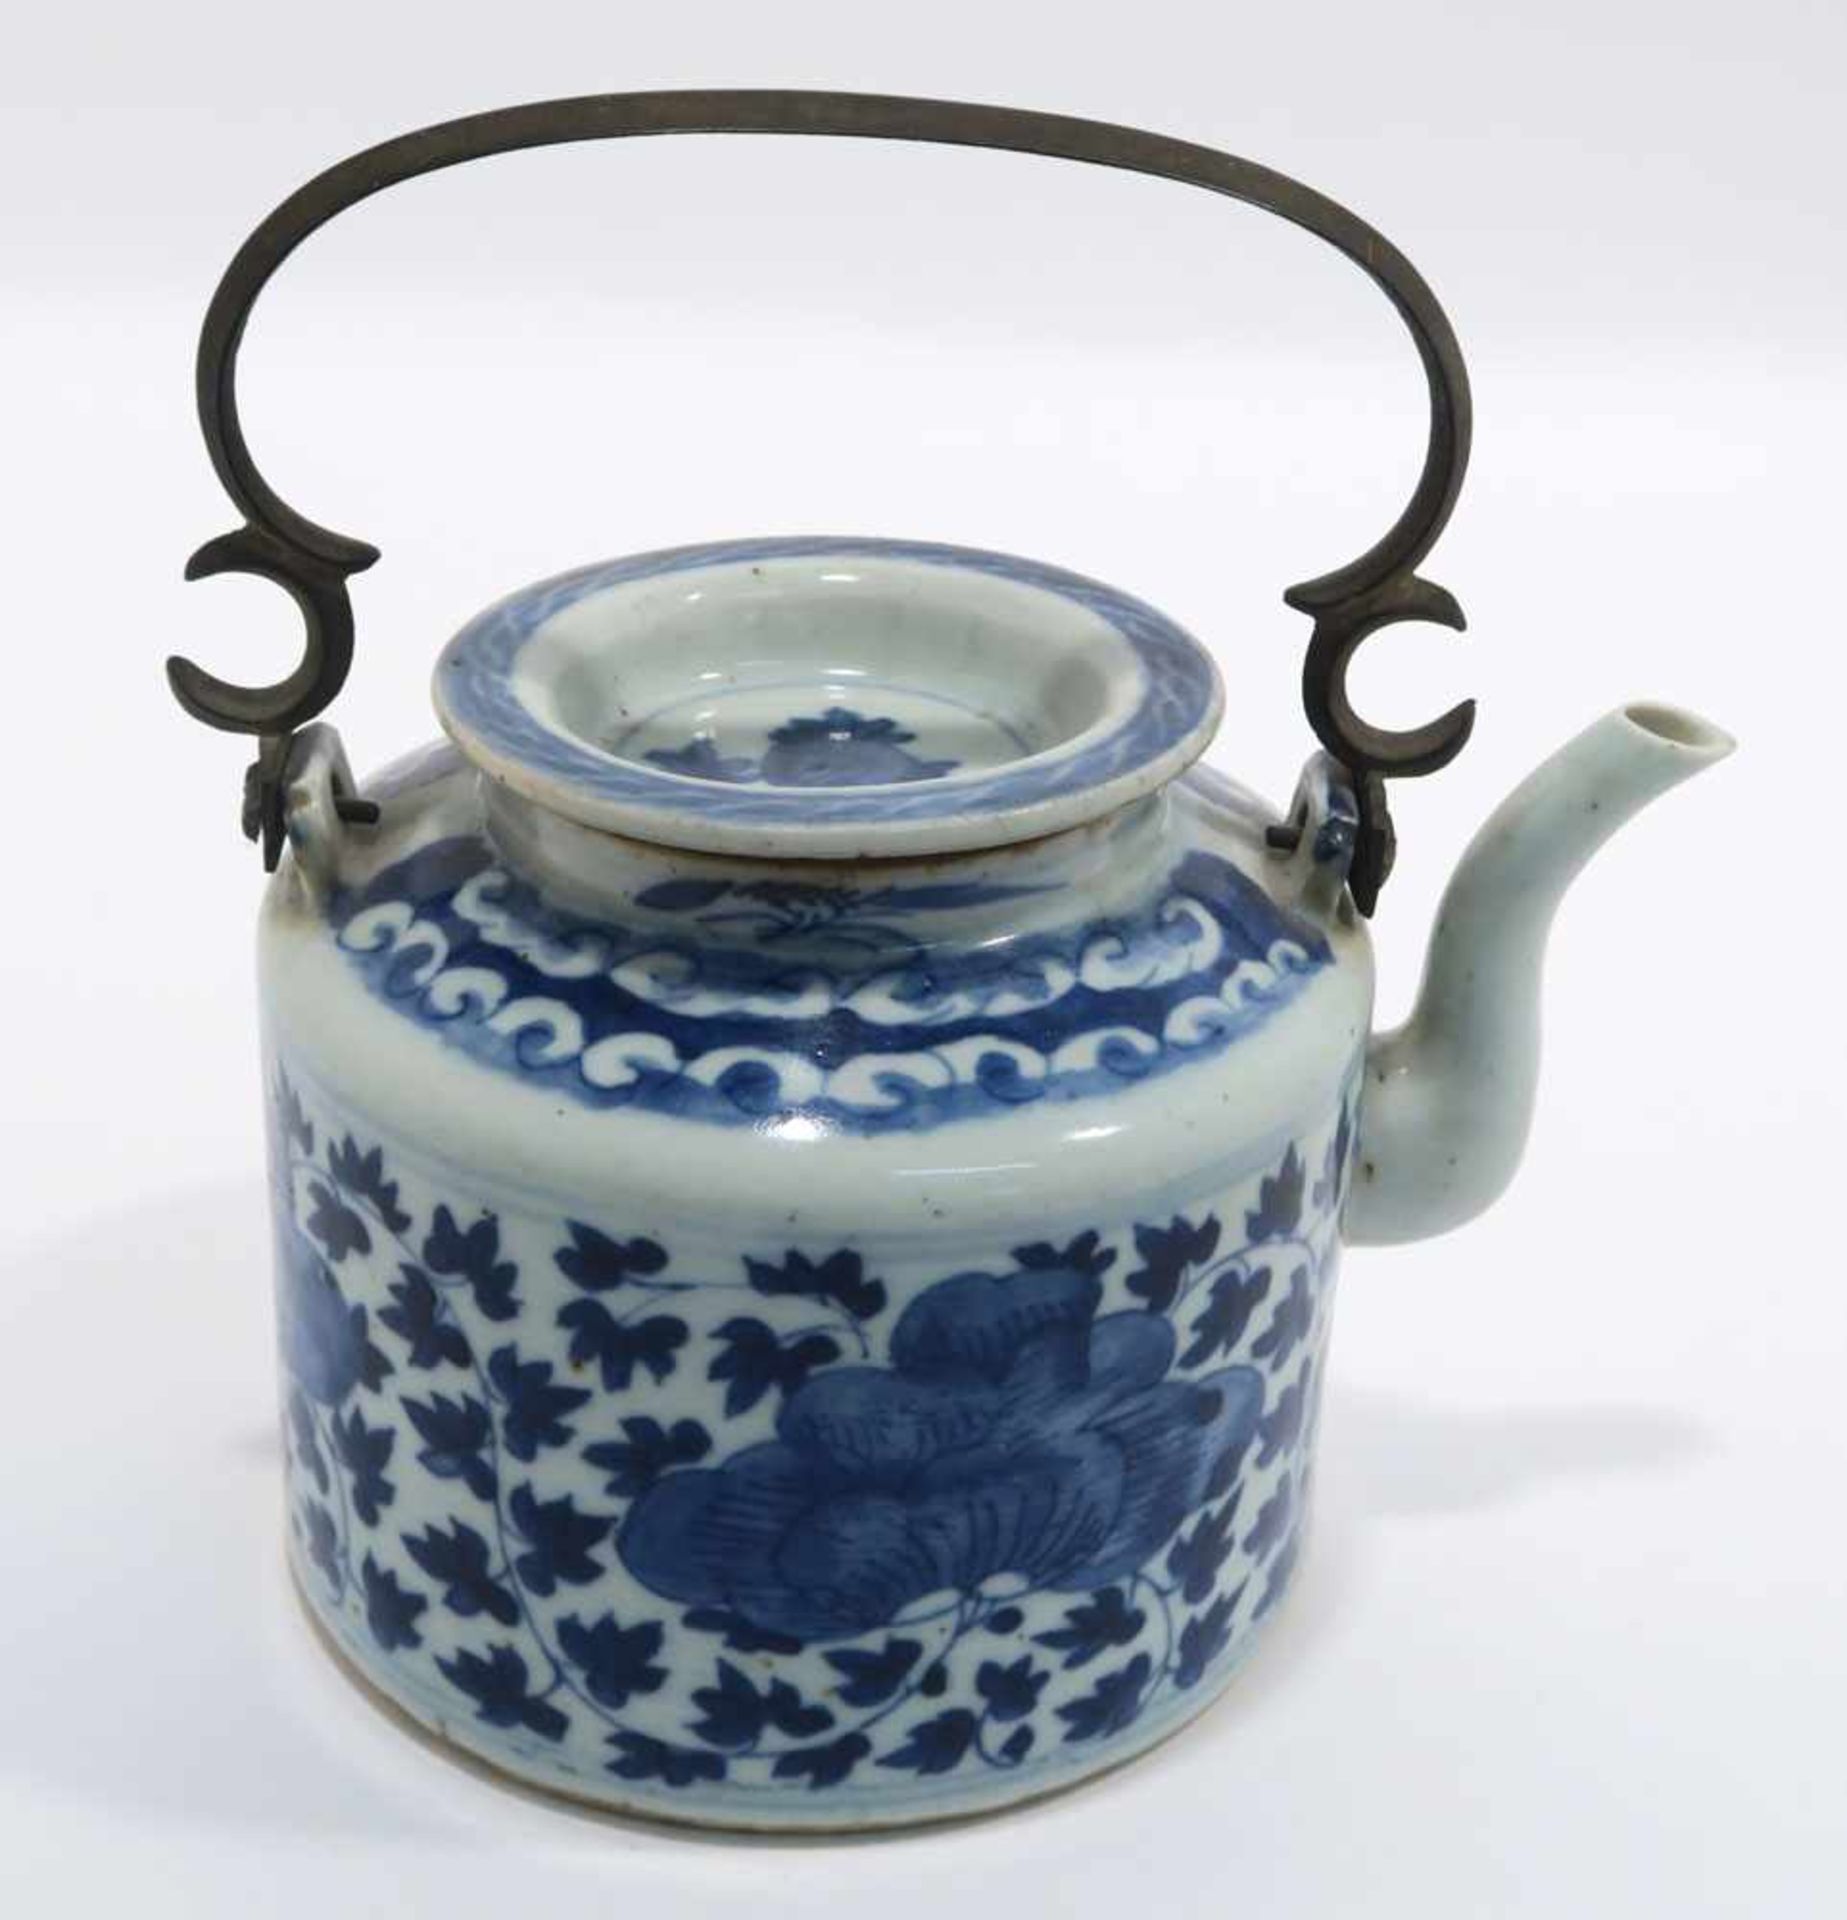 Zwei TeekannenChina. Porzellan. Floraler bzw. figürlicher Blaudekor. Metallhenkel. H. 11,5 cm bzw. - Bild 5 aus 15